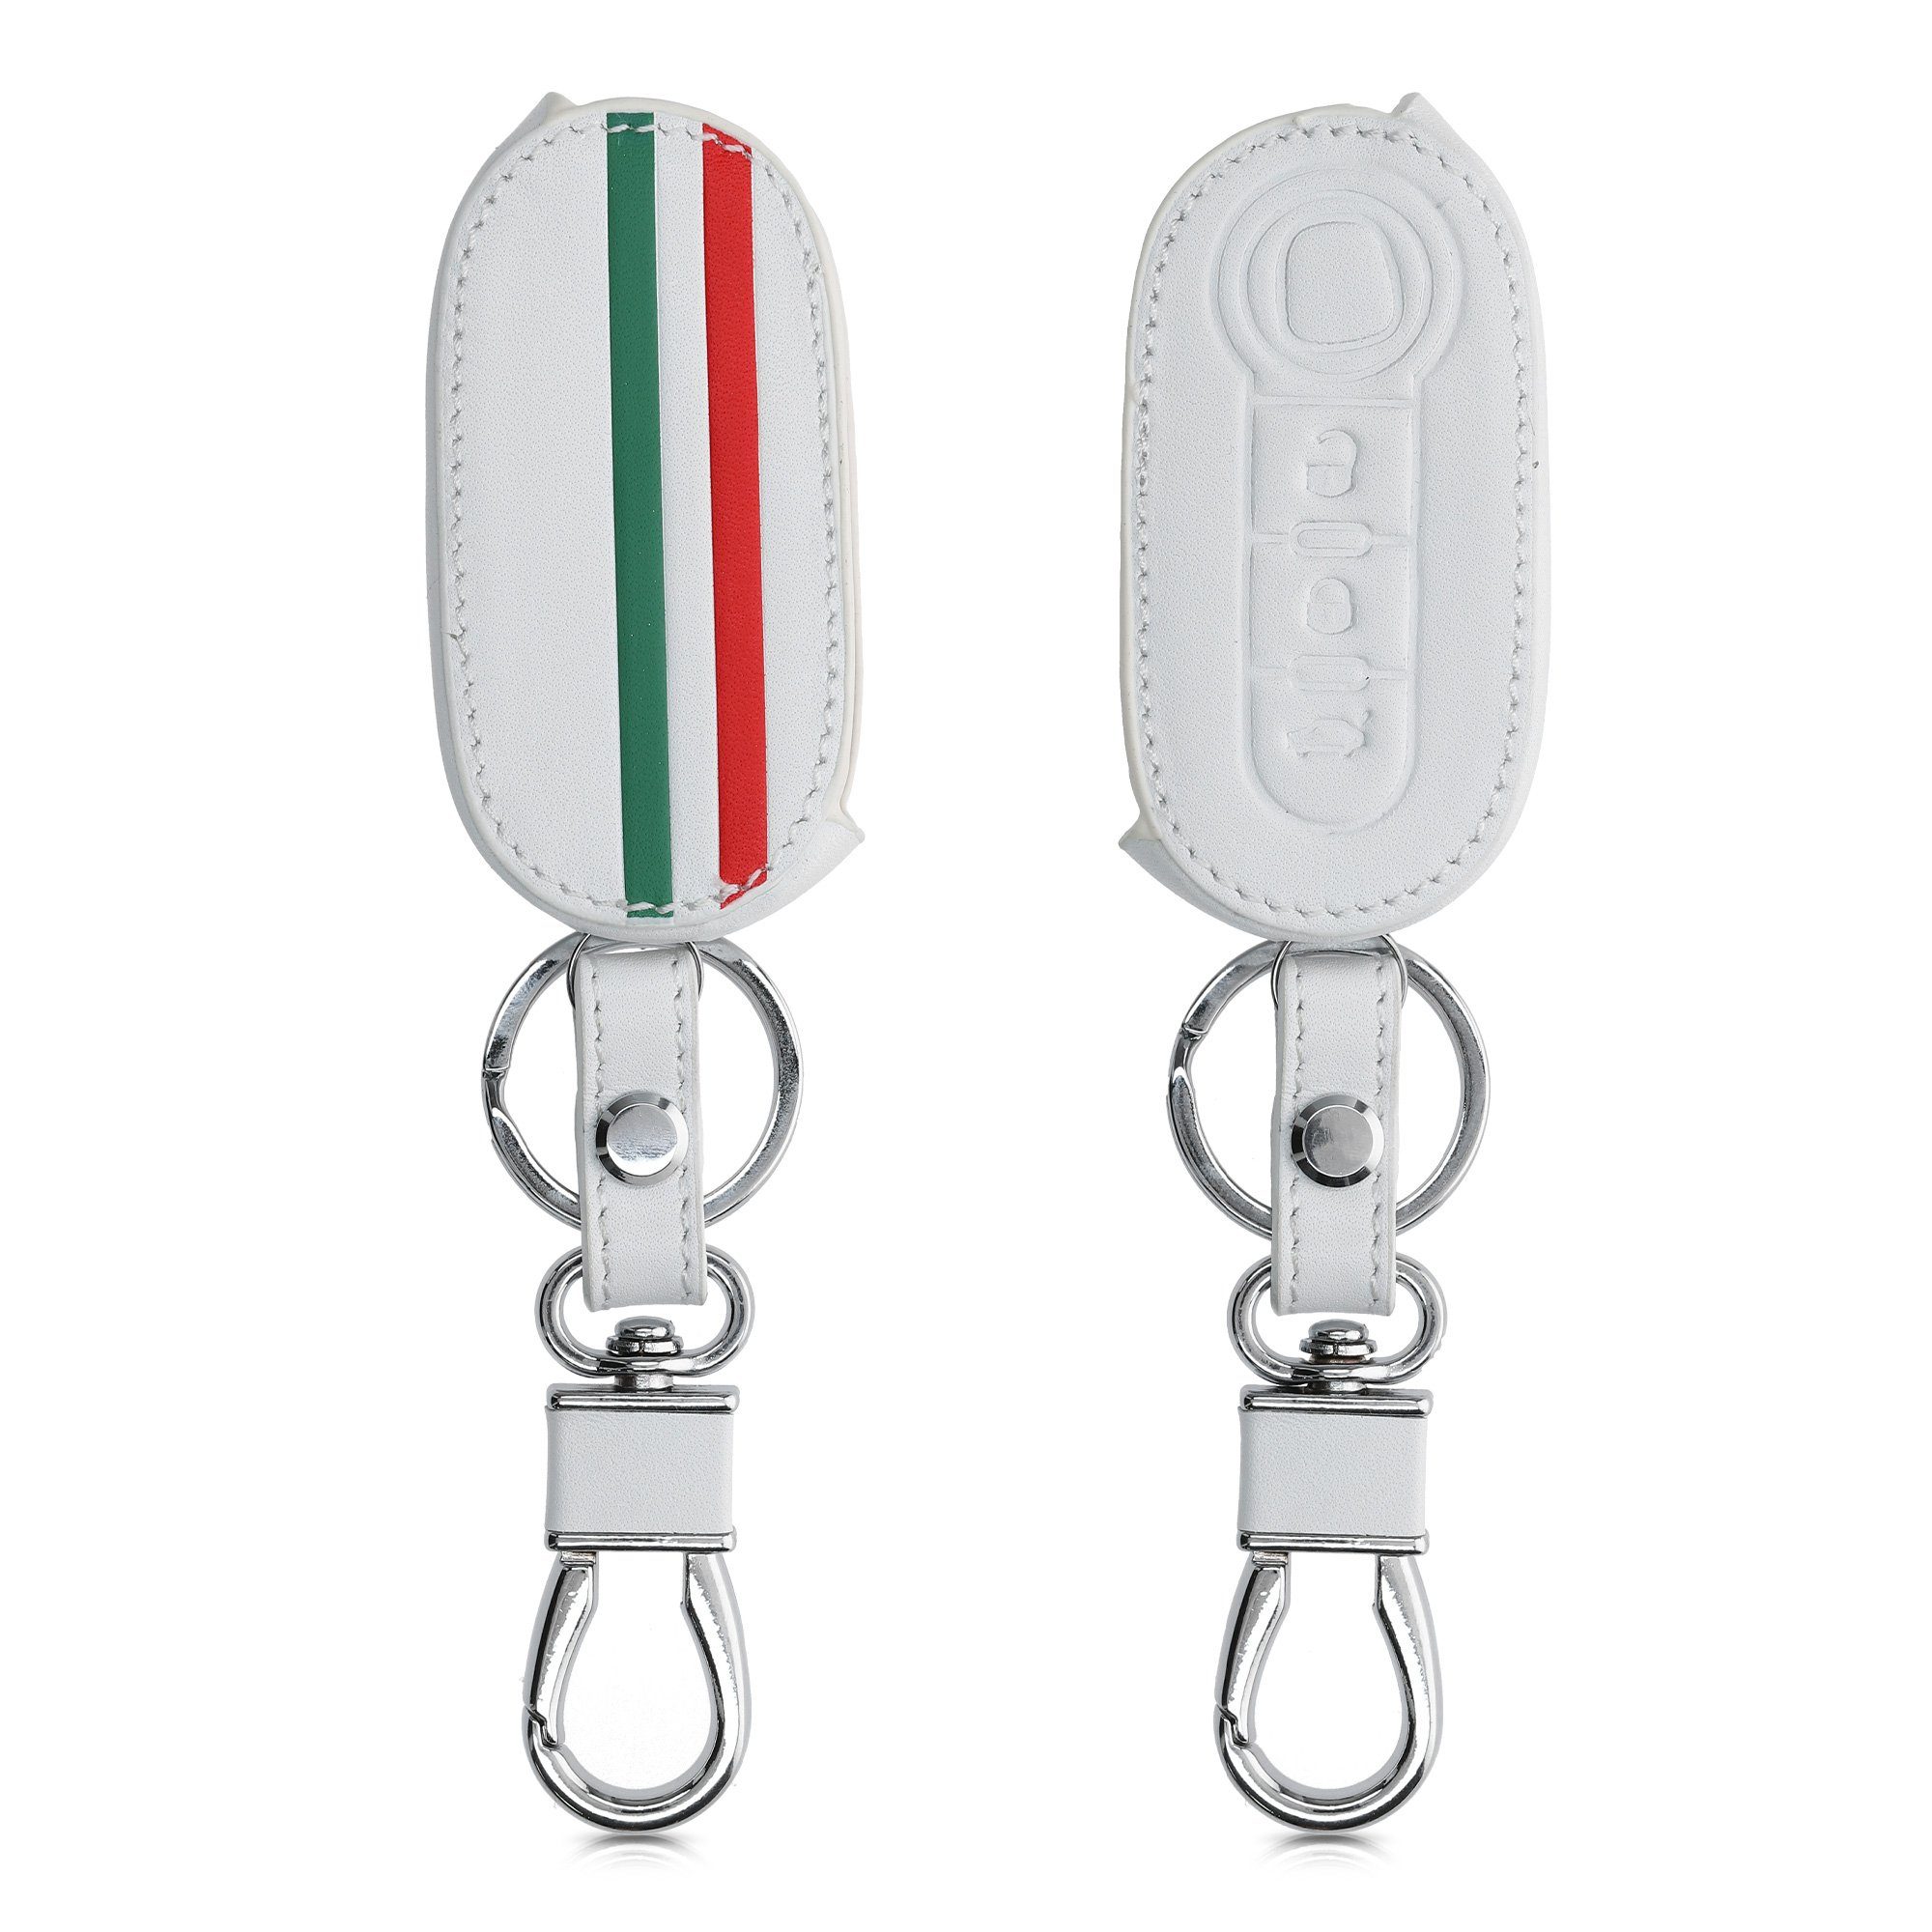 Schrift kwmobile Schlüsseltasche Autoschlüssel Hülle Kunstleder Lancia, für Fiat Schlüsselhülle Schutzhülle Cover